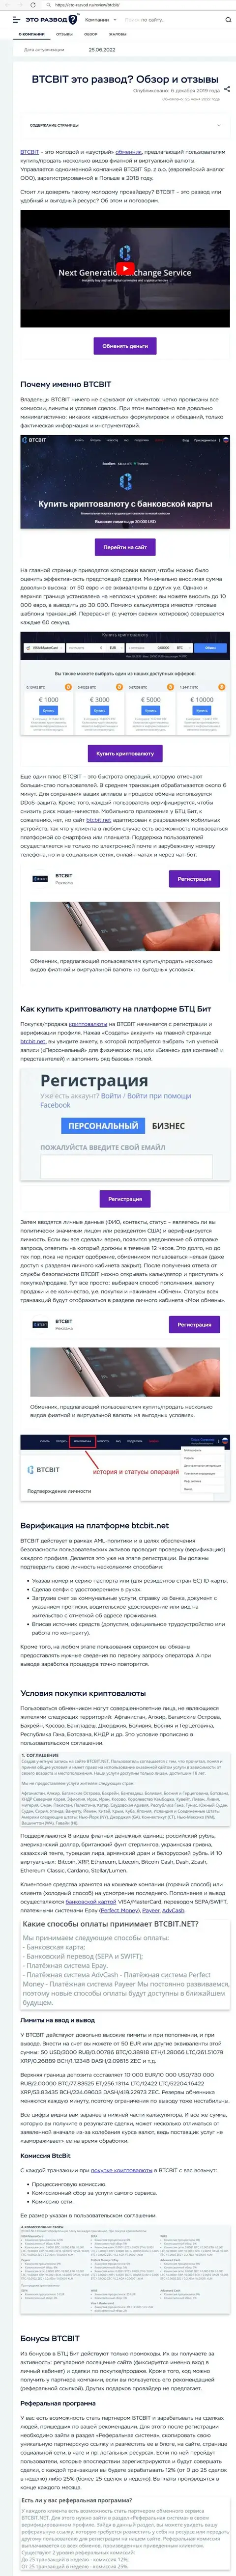 Обзор деятельности и условия для предоставления услуг обменного пункта БТК Бит в материале на онлайн-сервисе eto razvod ru